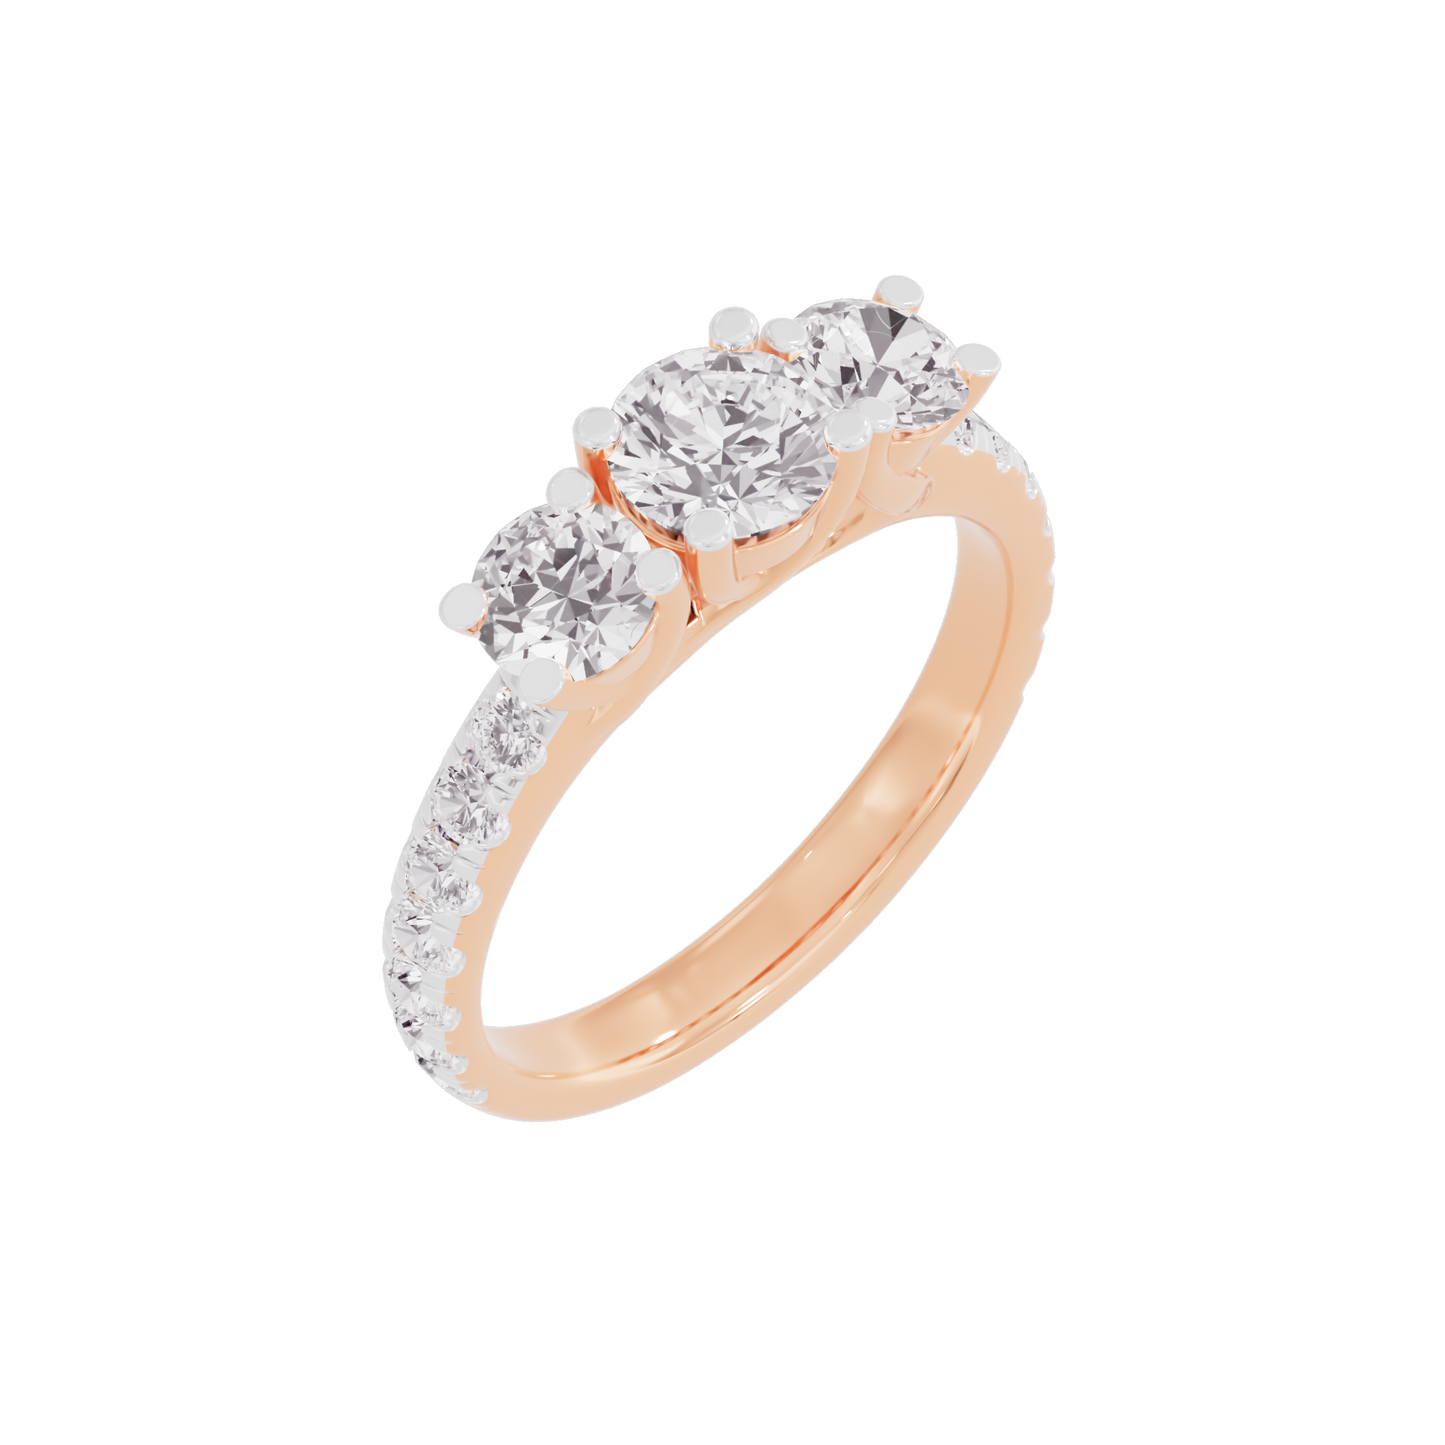 Starlit Serenade Diamond Ring